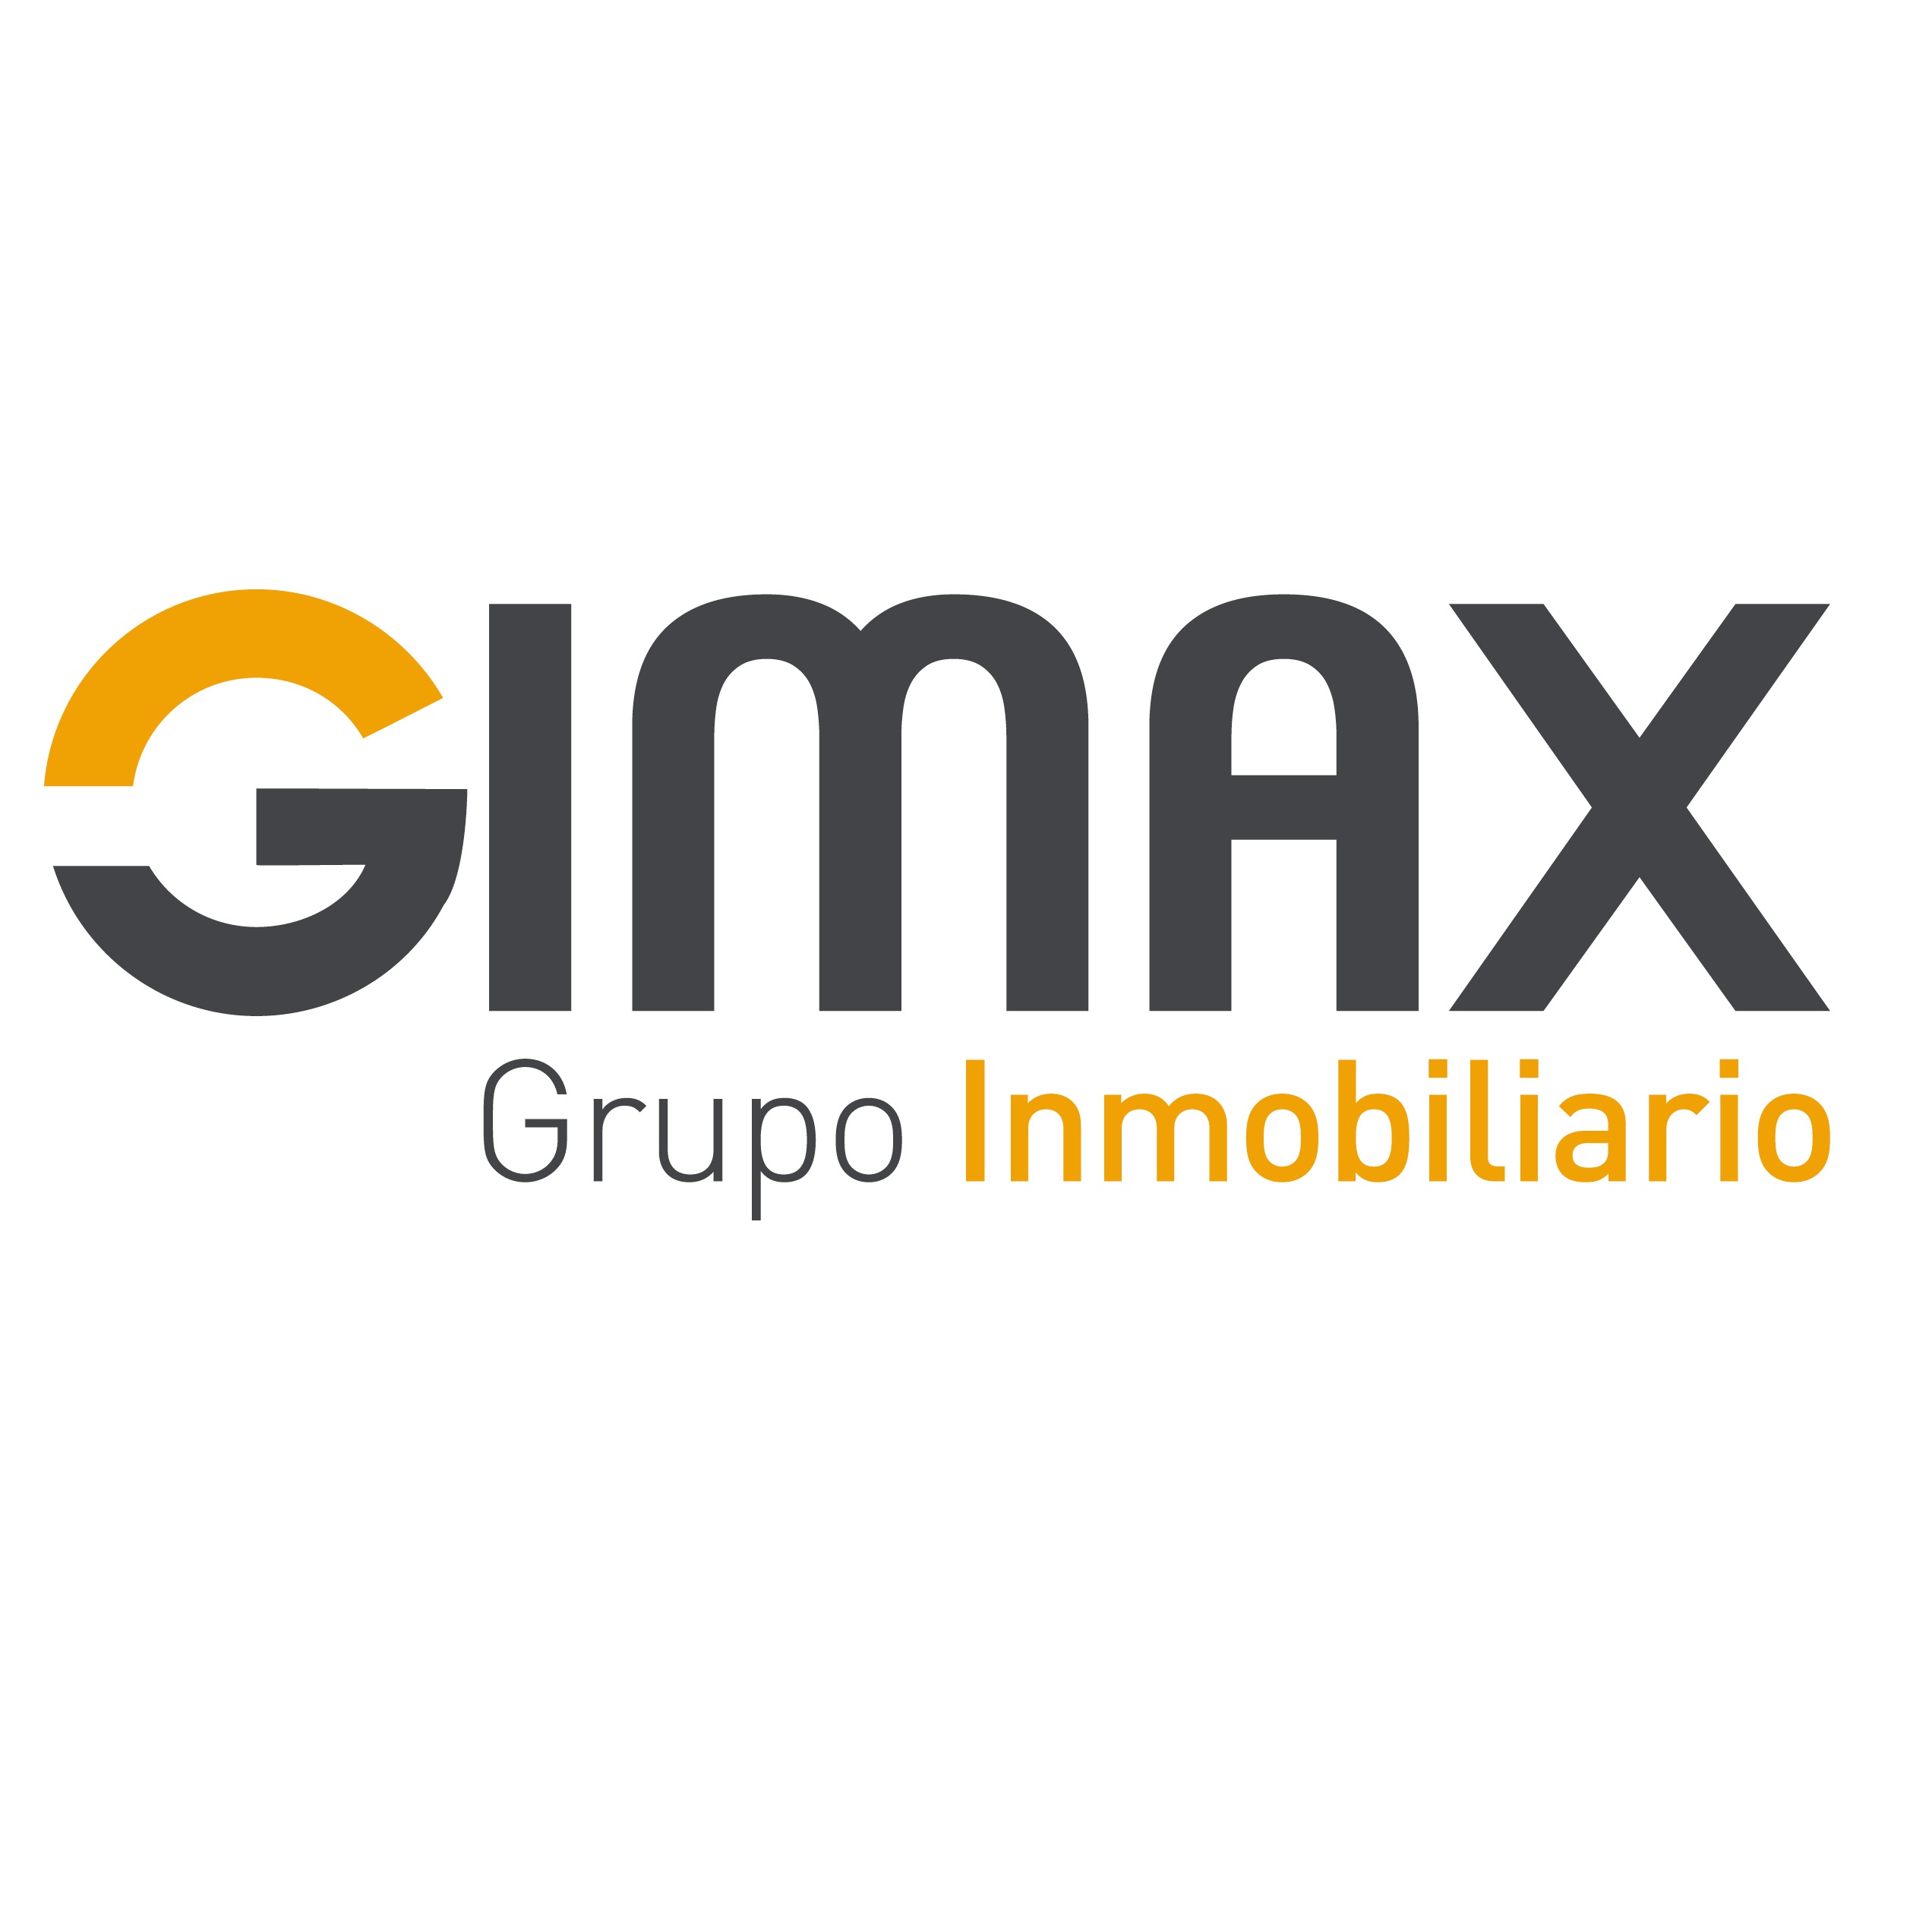 Gimax